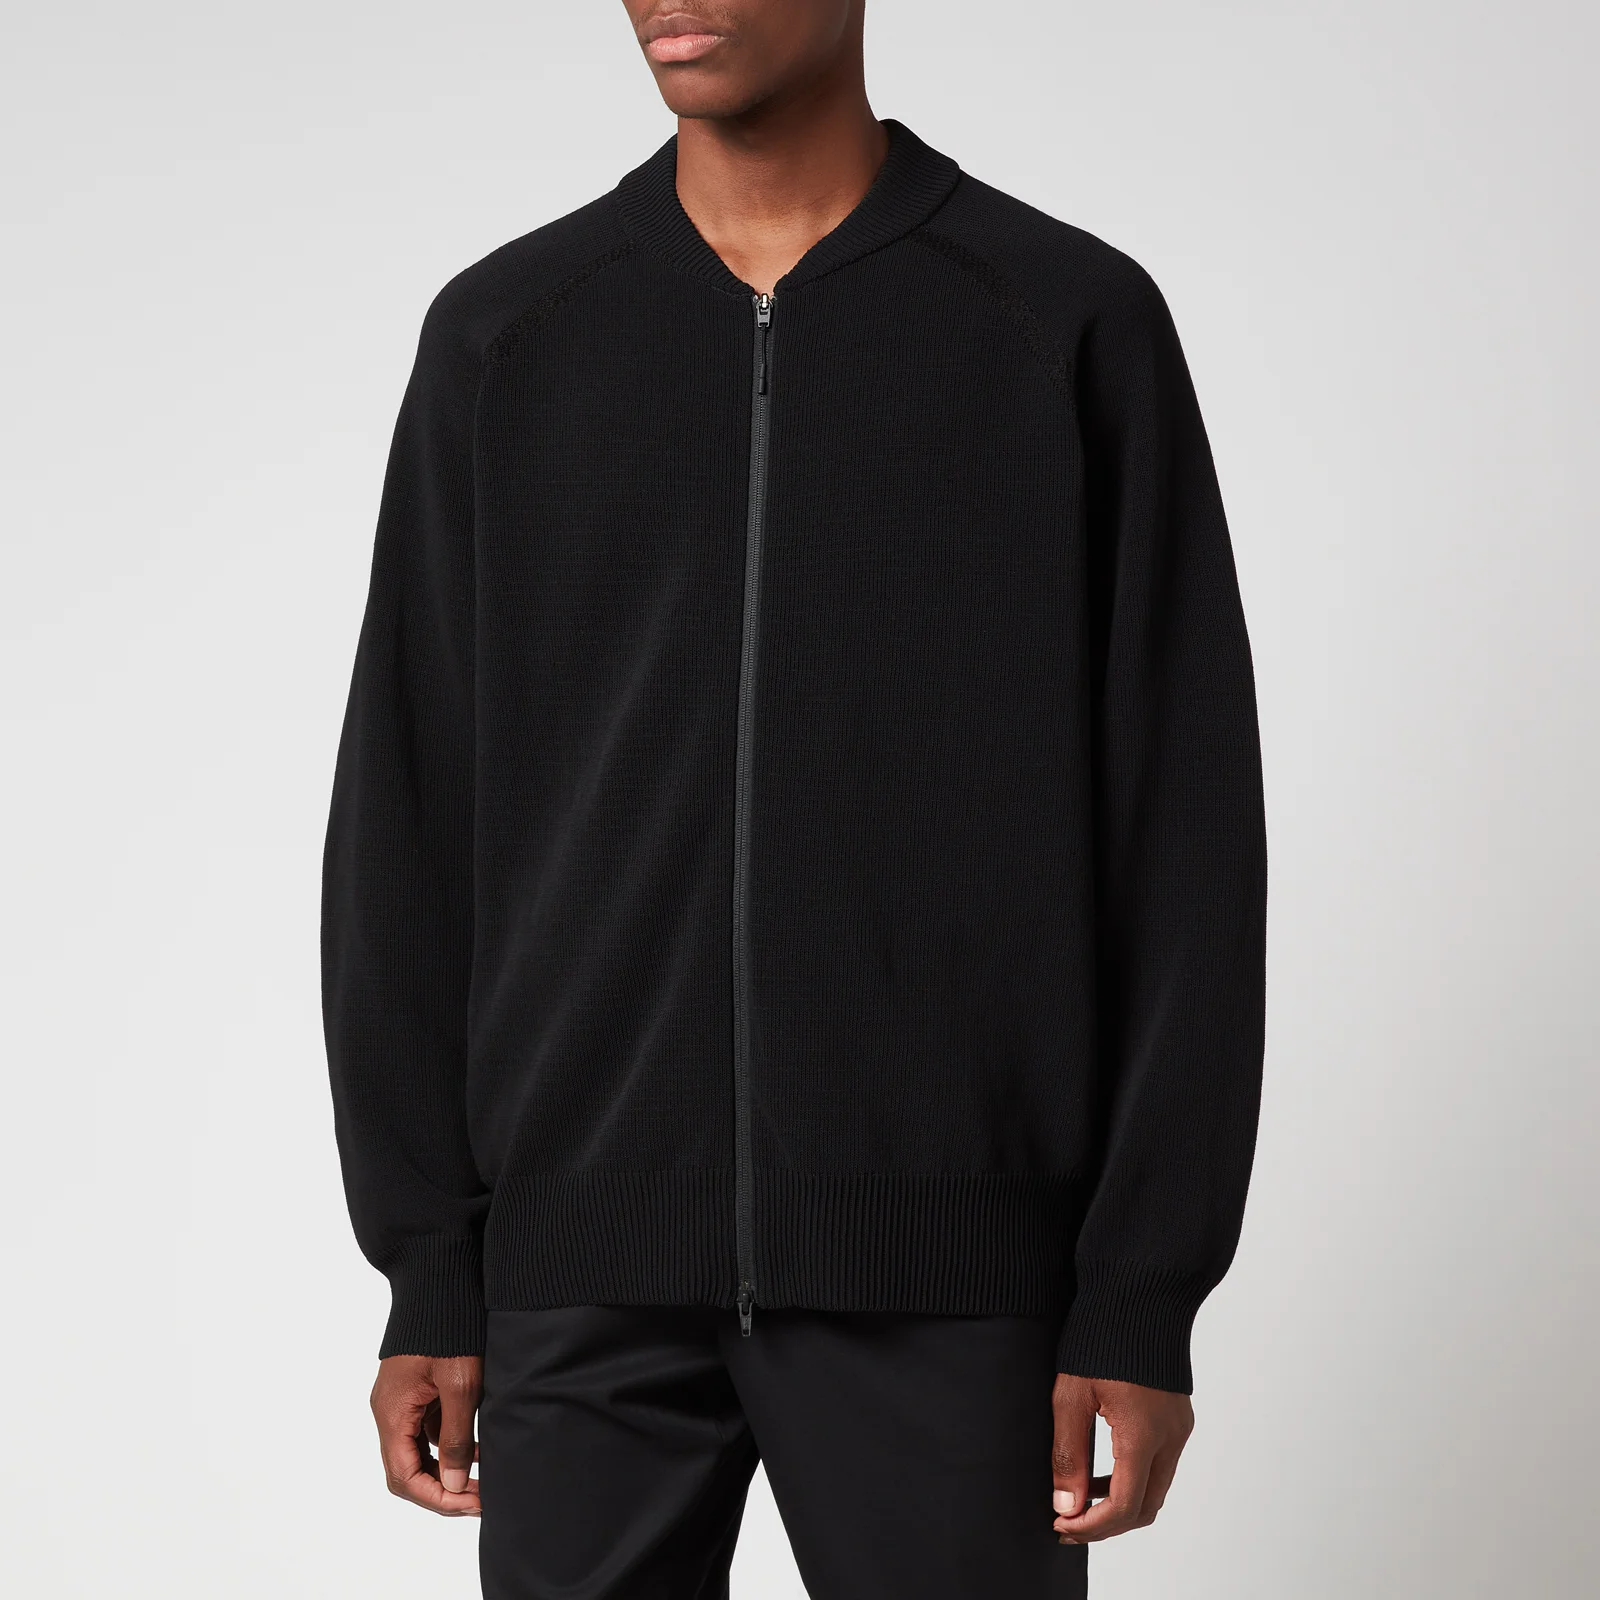 Y-3 Men's Full Zip Sweatshirt - Black Image 1